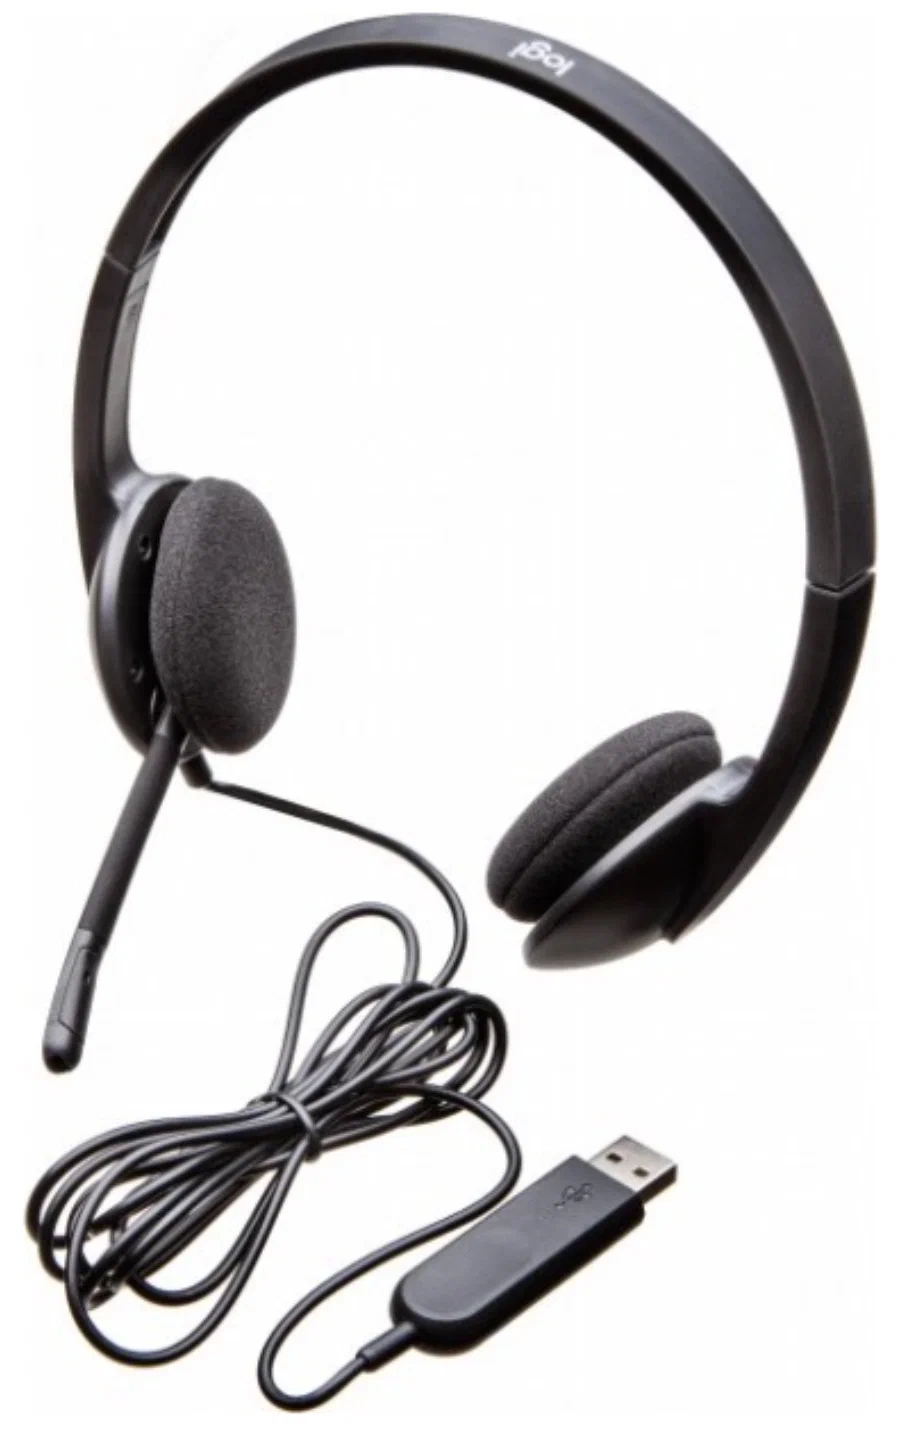 Наушники Logitech Headset H340 черный (981-000509)